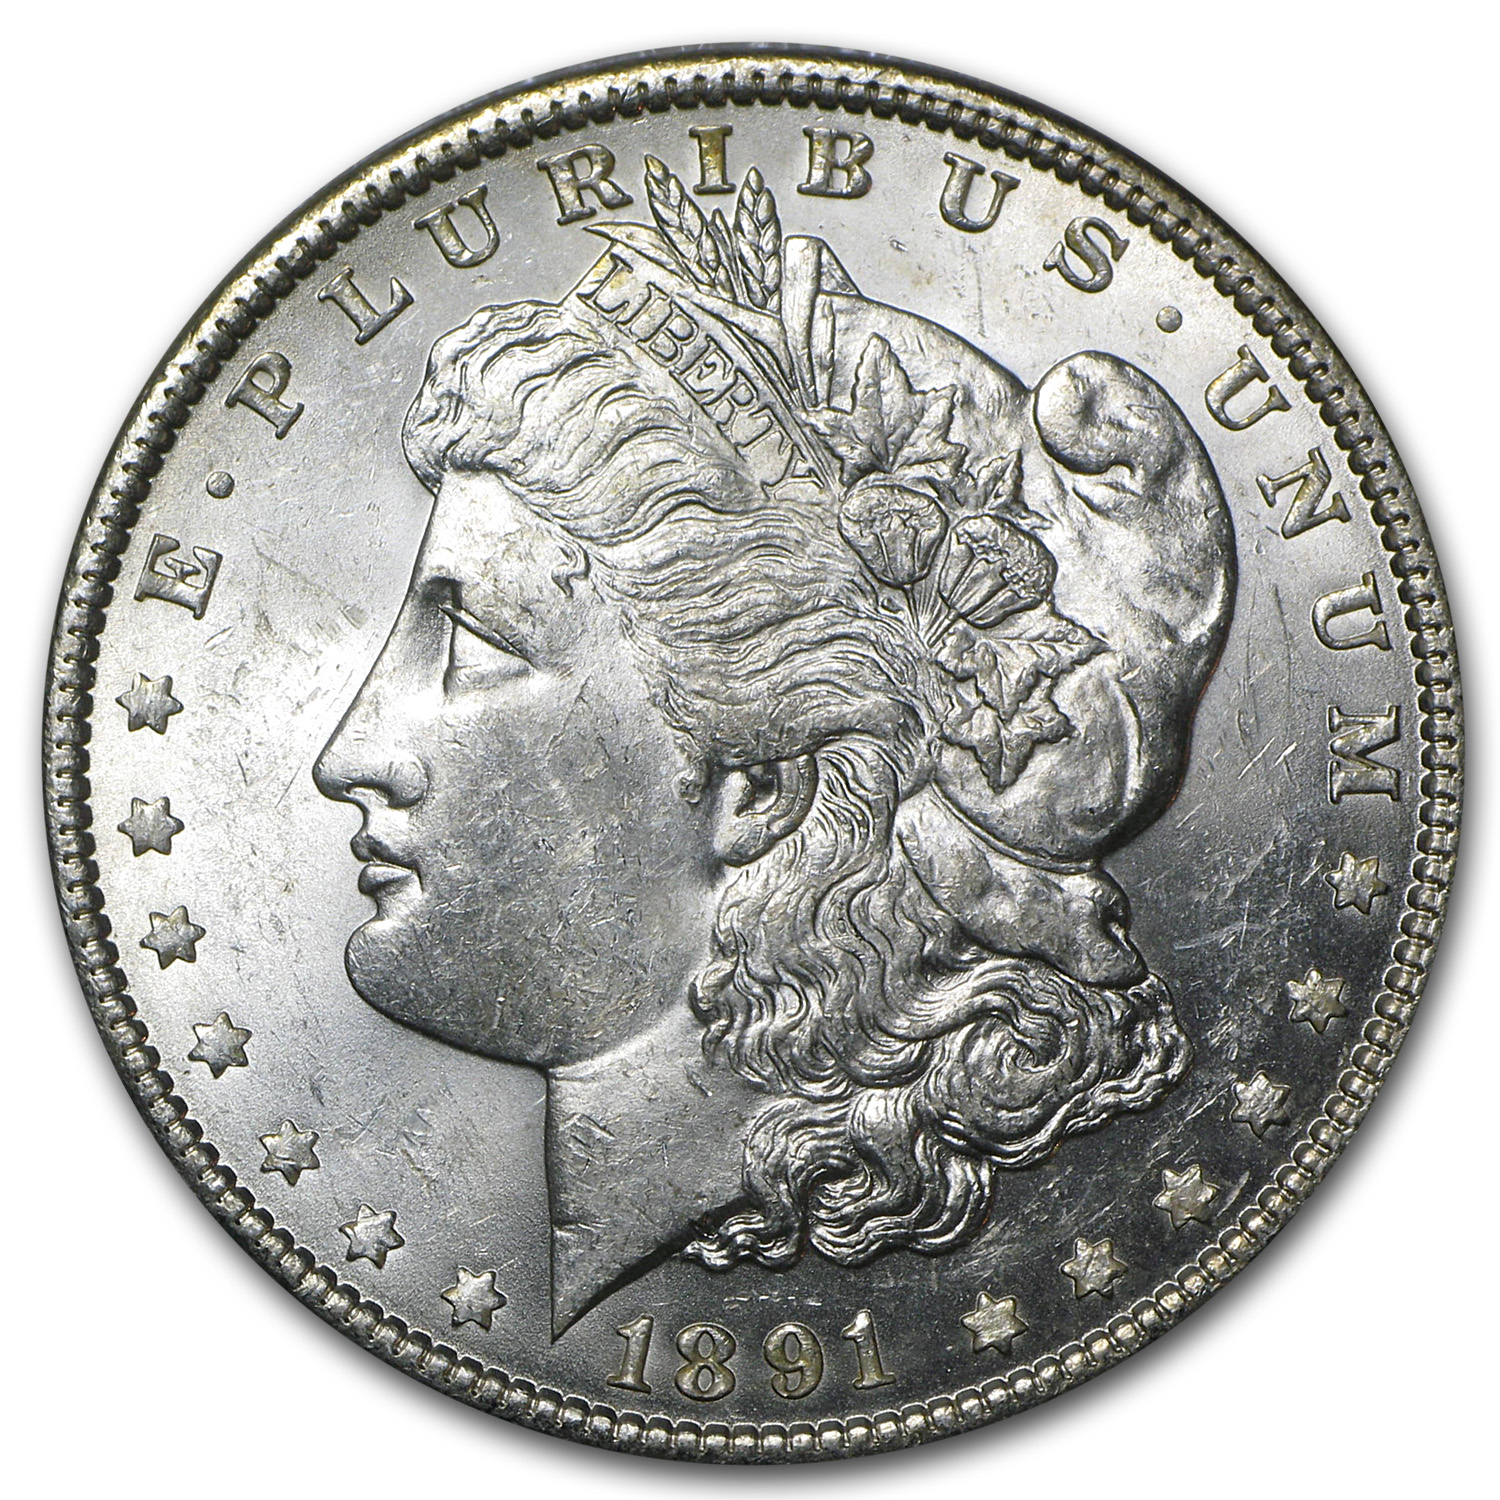 Buy 1891 Morgan Dollar BU